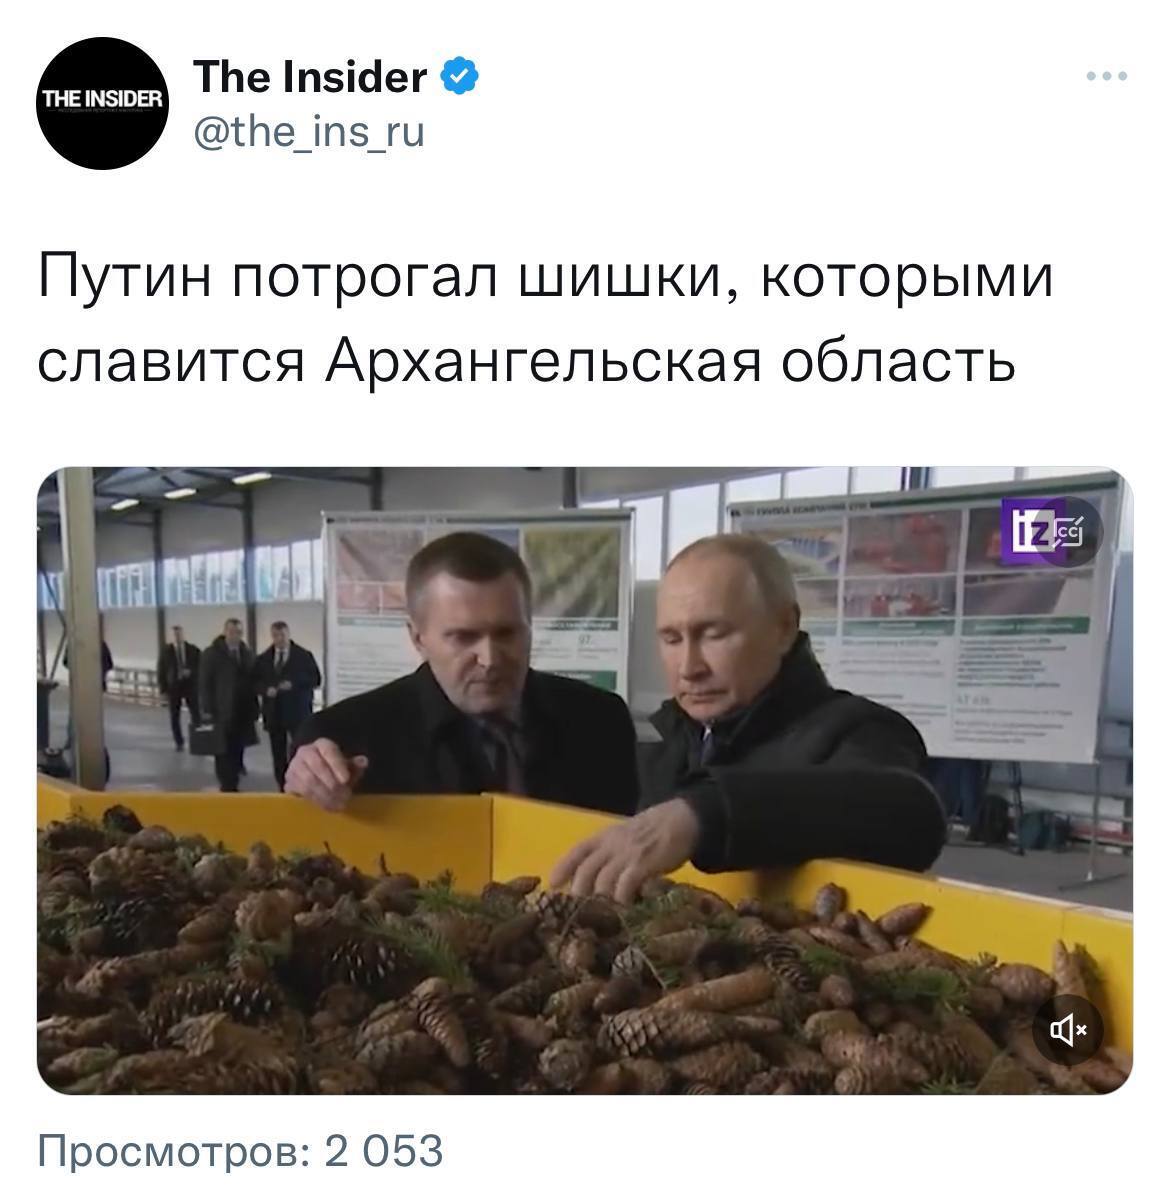 Путін в Архангельській області погрався із шишками: журналістів, які хотіли розповісти про "дійство", вже допитали. Фото